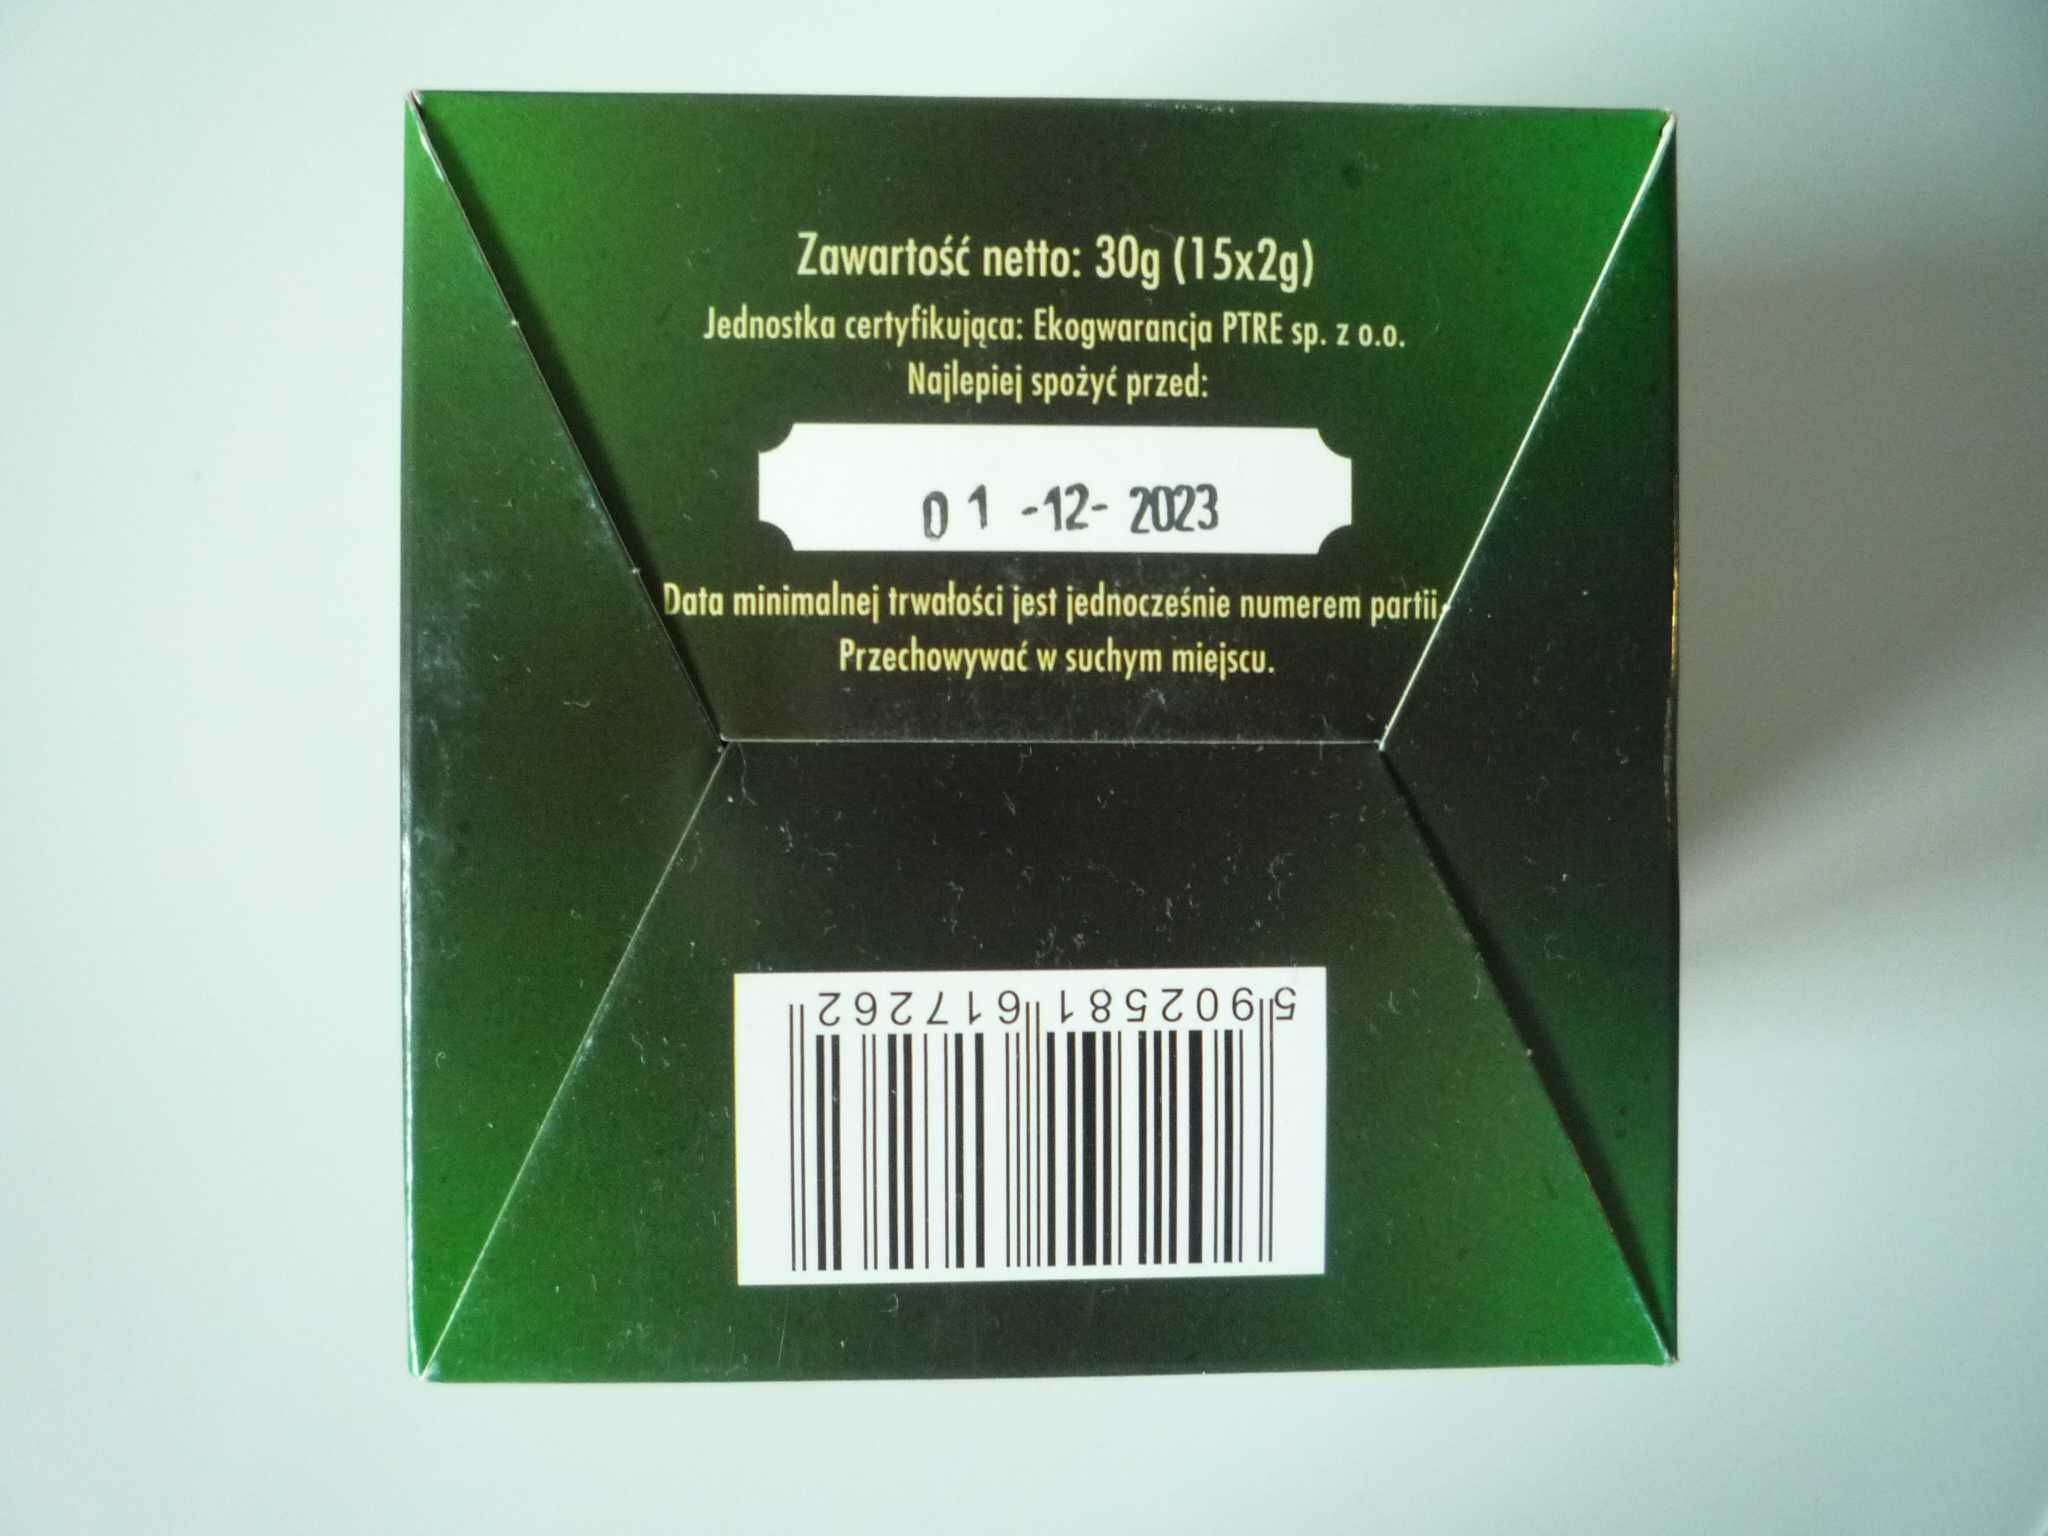 DARY NATURY Herbata zielona w piramidkach (30g) (15x2g) - BIO